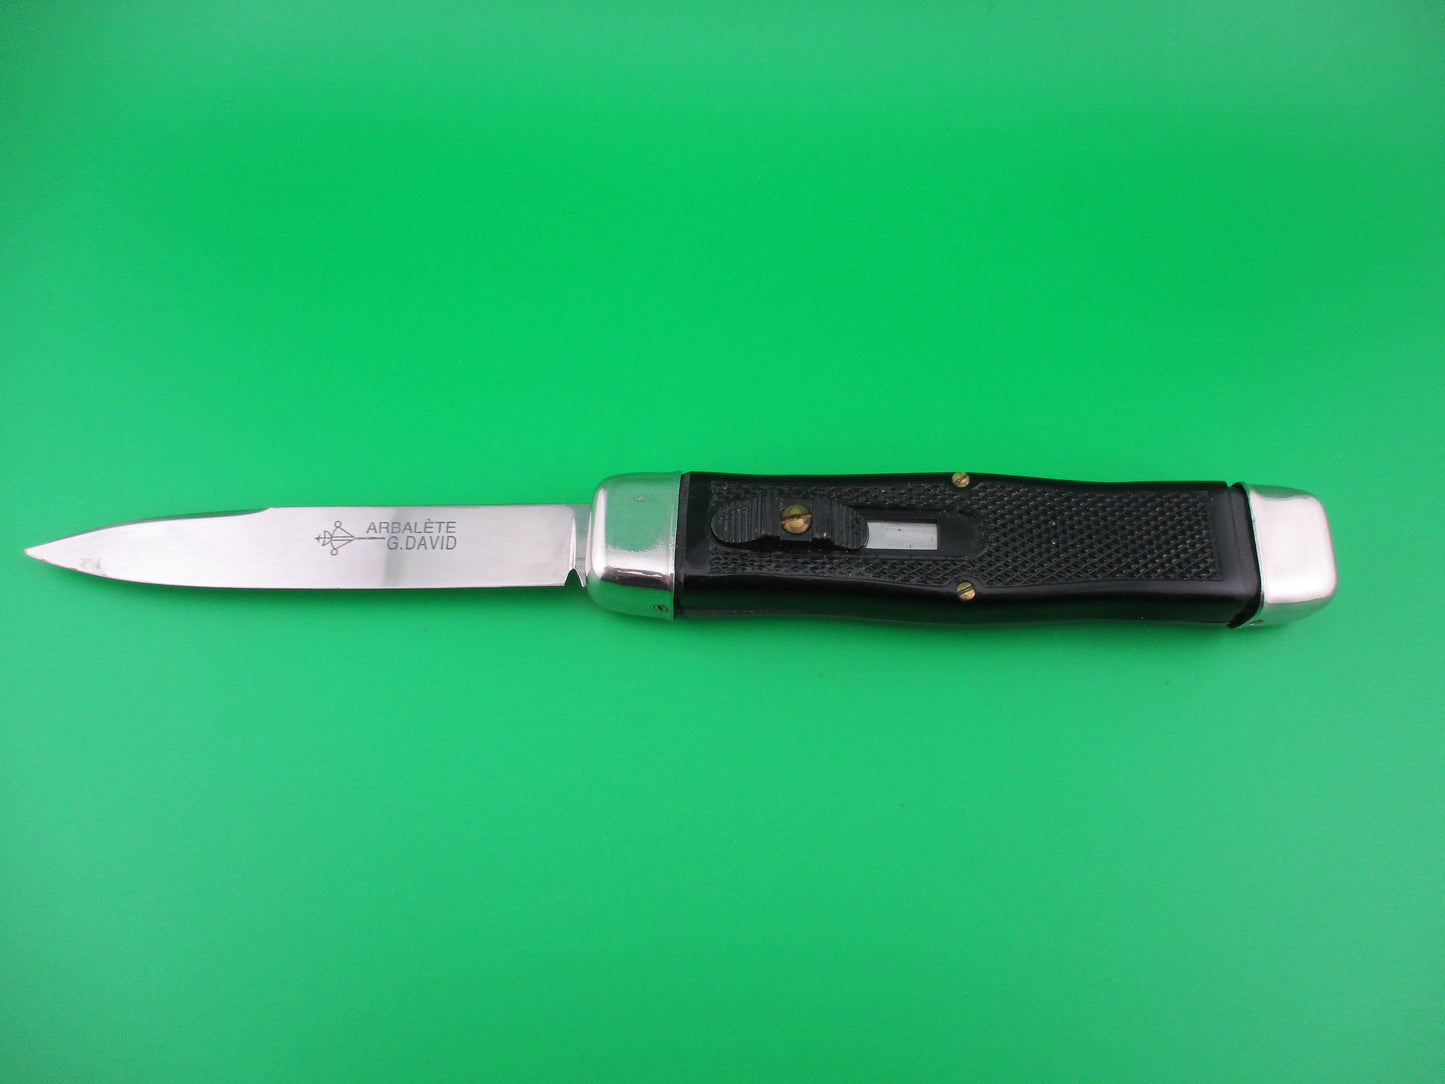 ARBALETE G. DAVID 23cm French Vintage OTF Black DA automatic knife